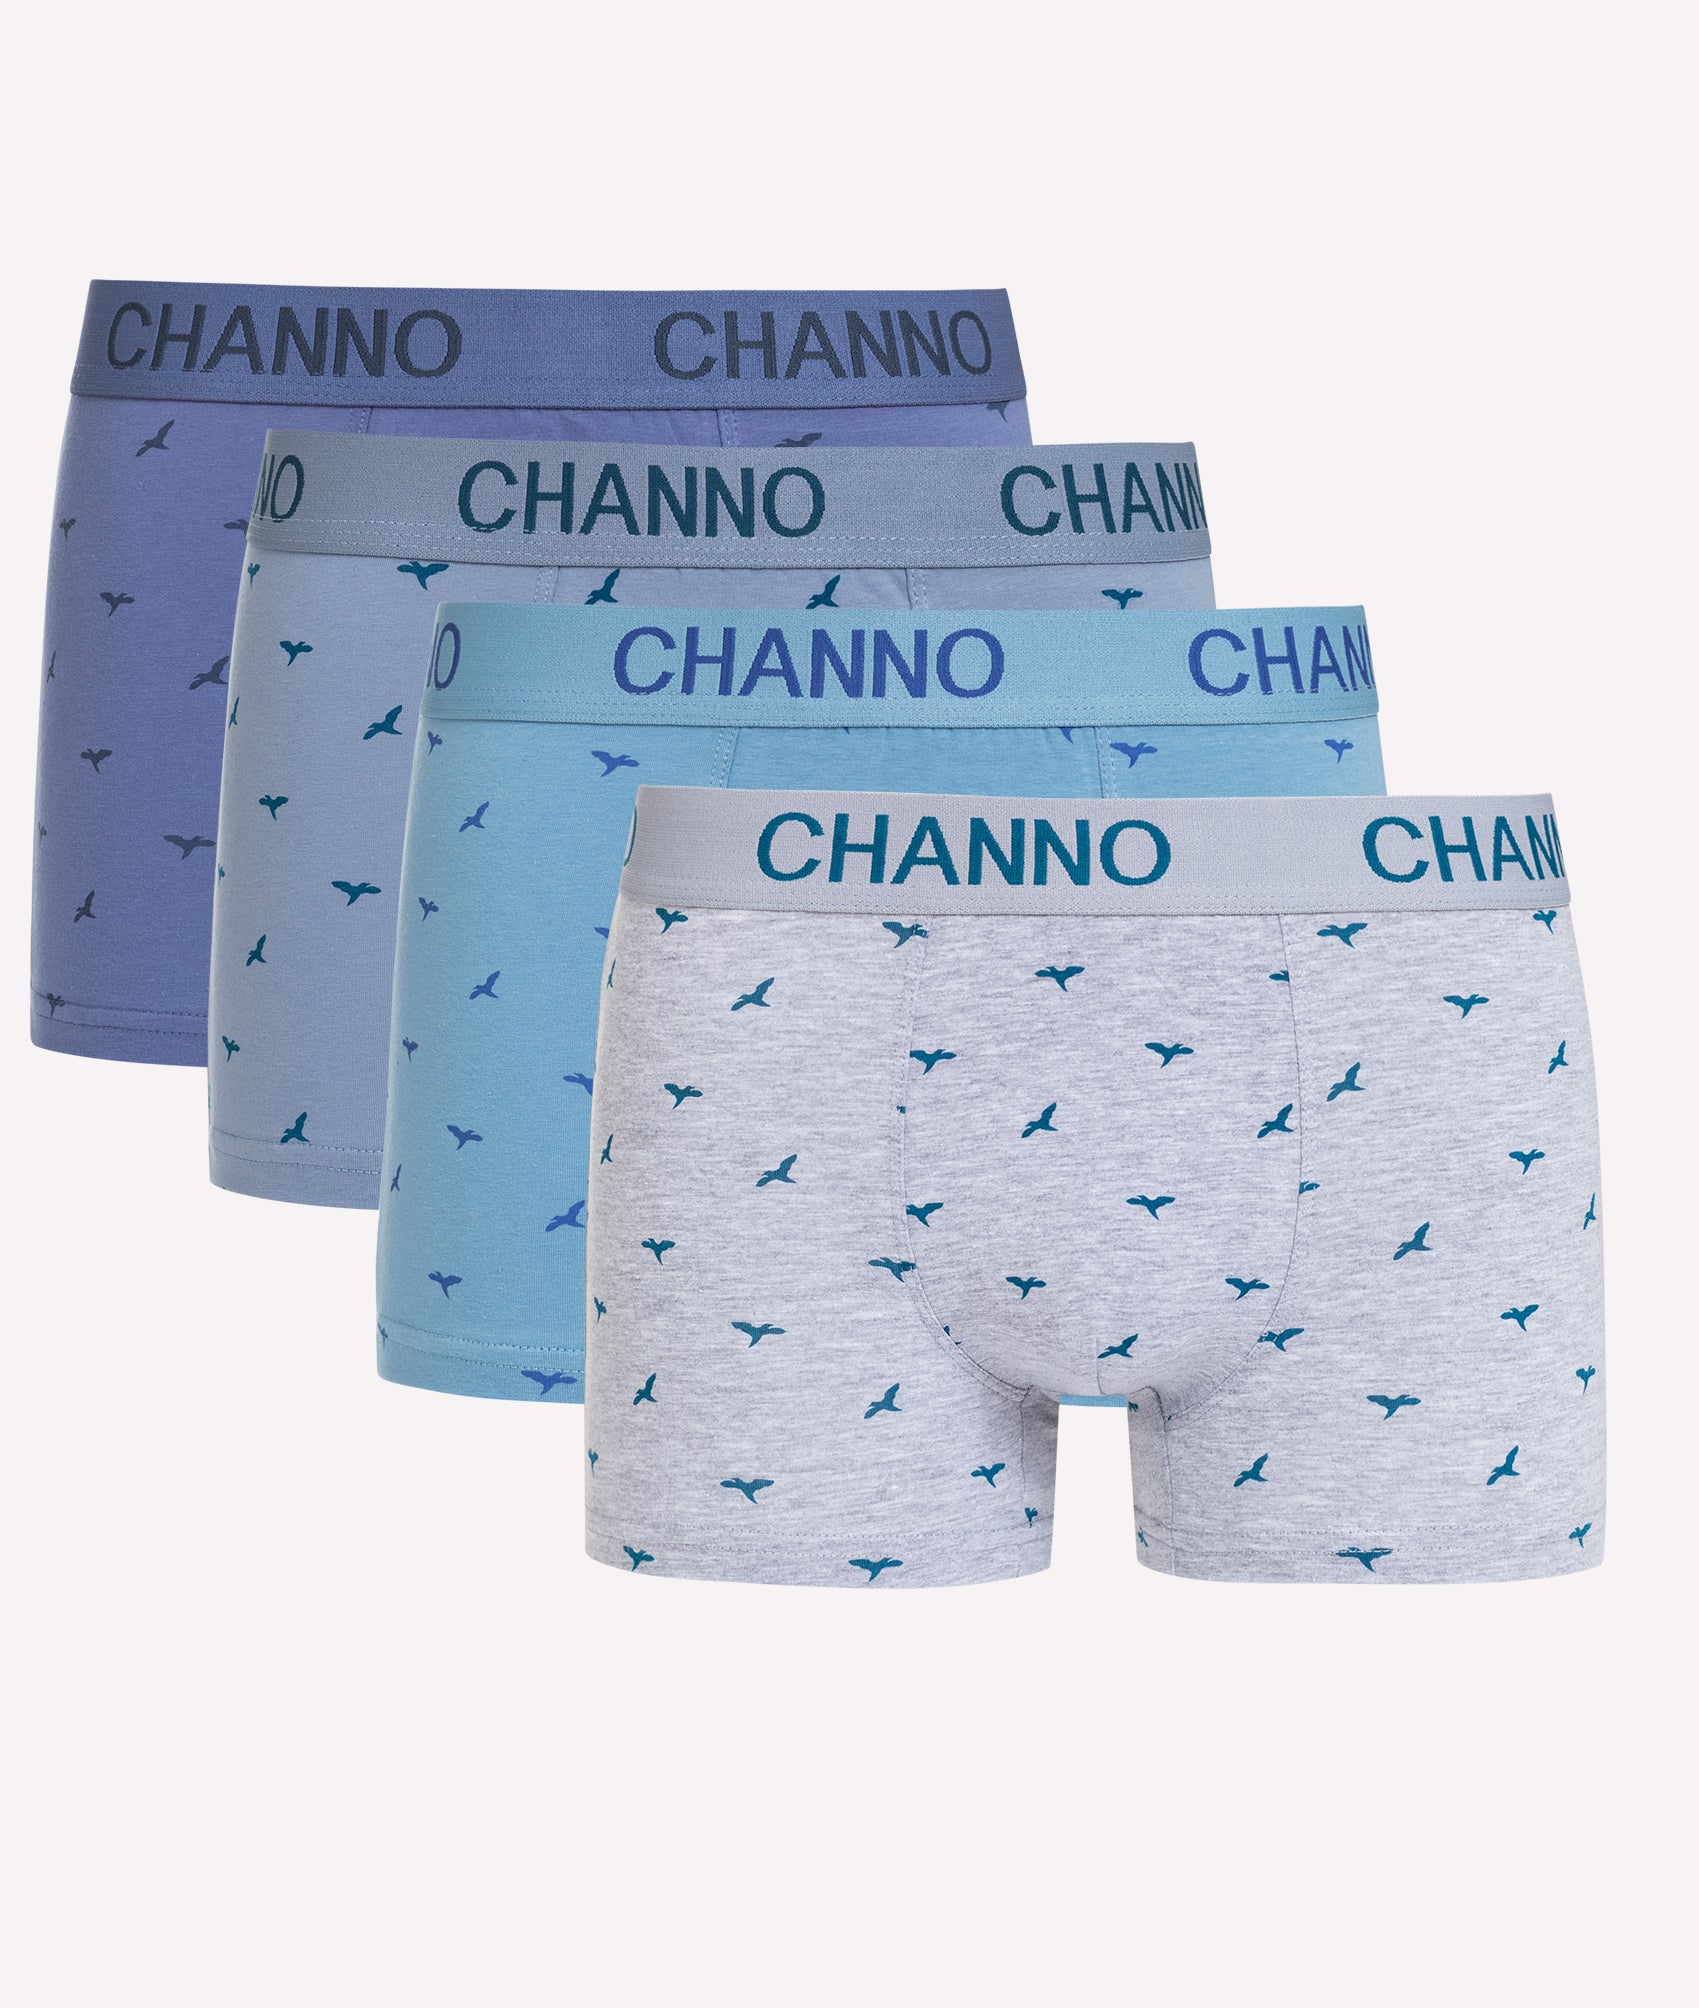 Calzoncillos calzón Bóxer hombre - CHANNO Man – Channo